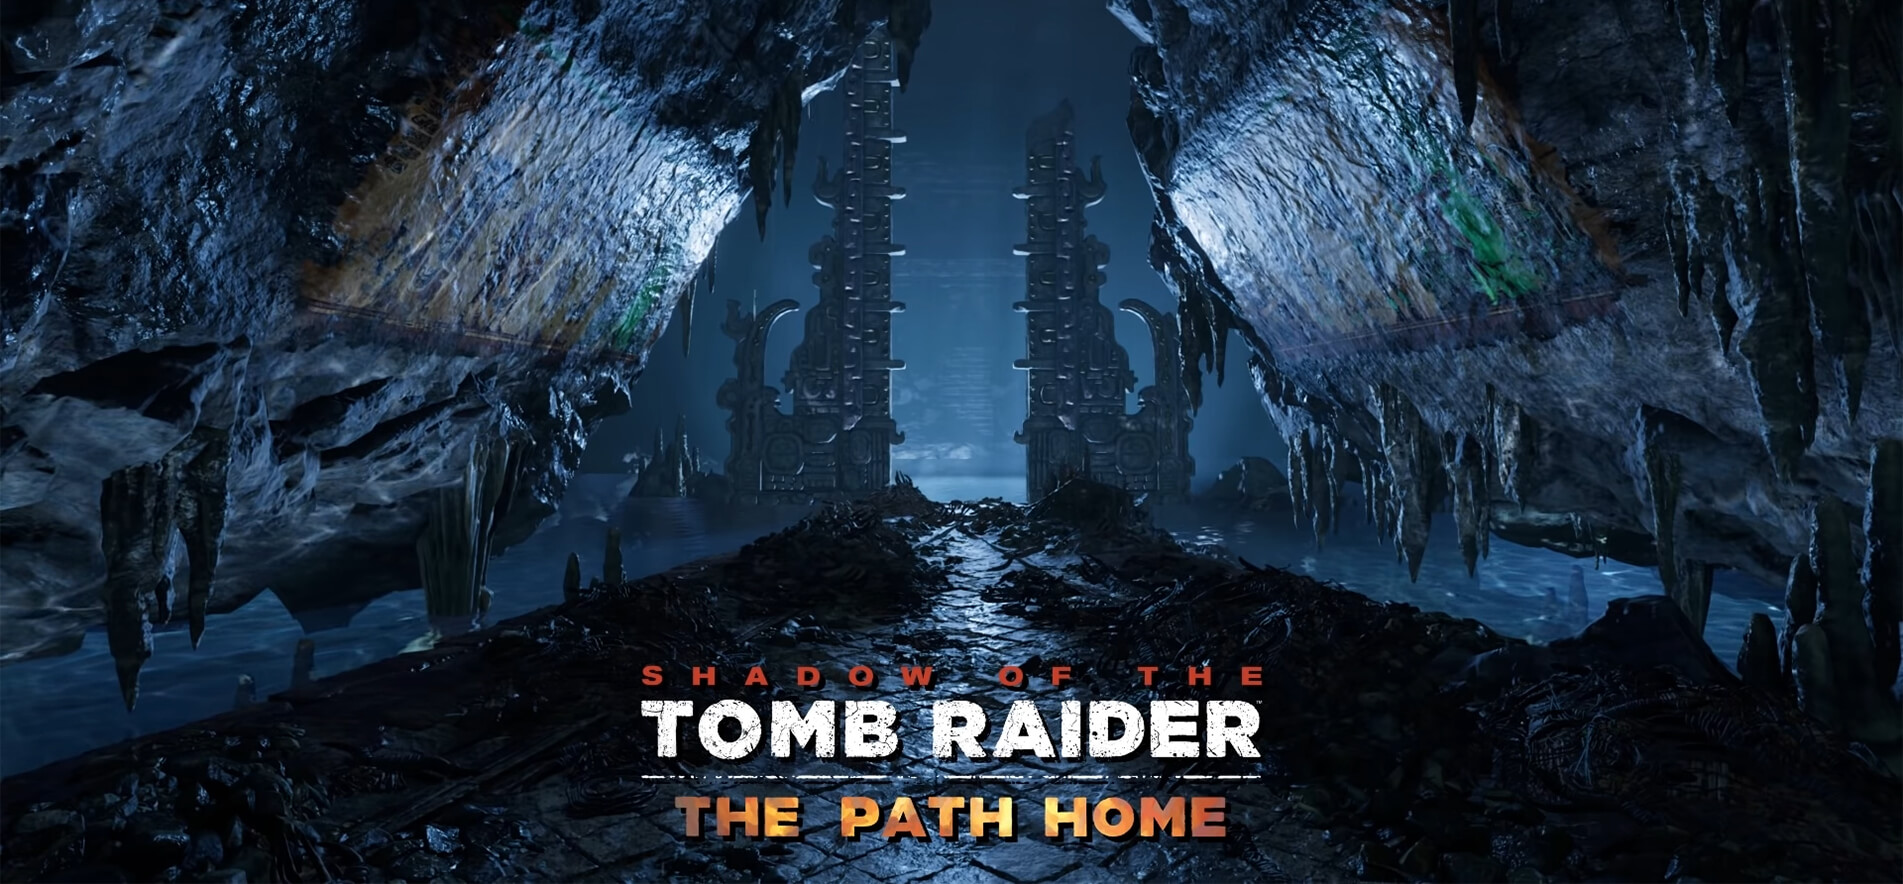 «Путь домой» — вышло последнее дополнение Shadow of the Tomb Raider (фото)